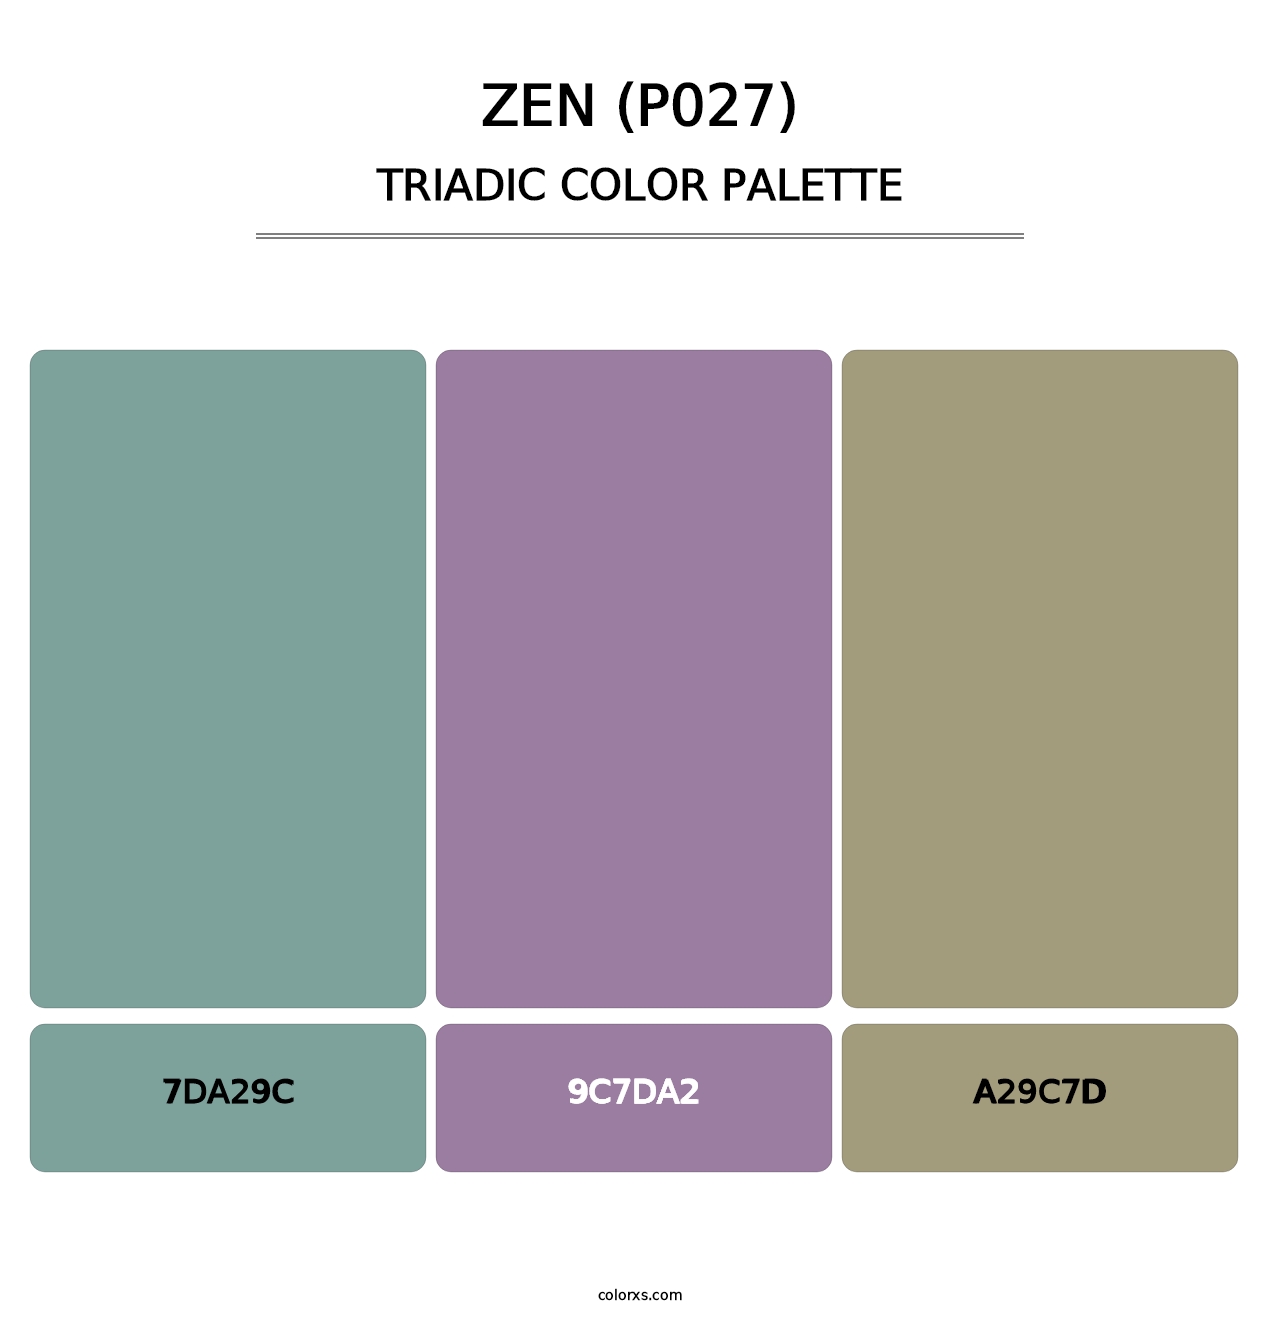 Zen (P027) - Triadic Color Palette